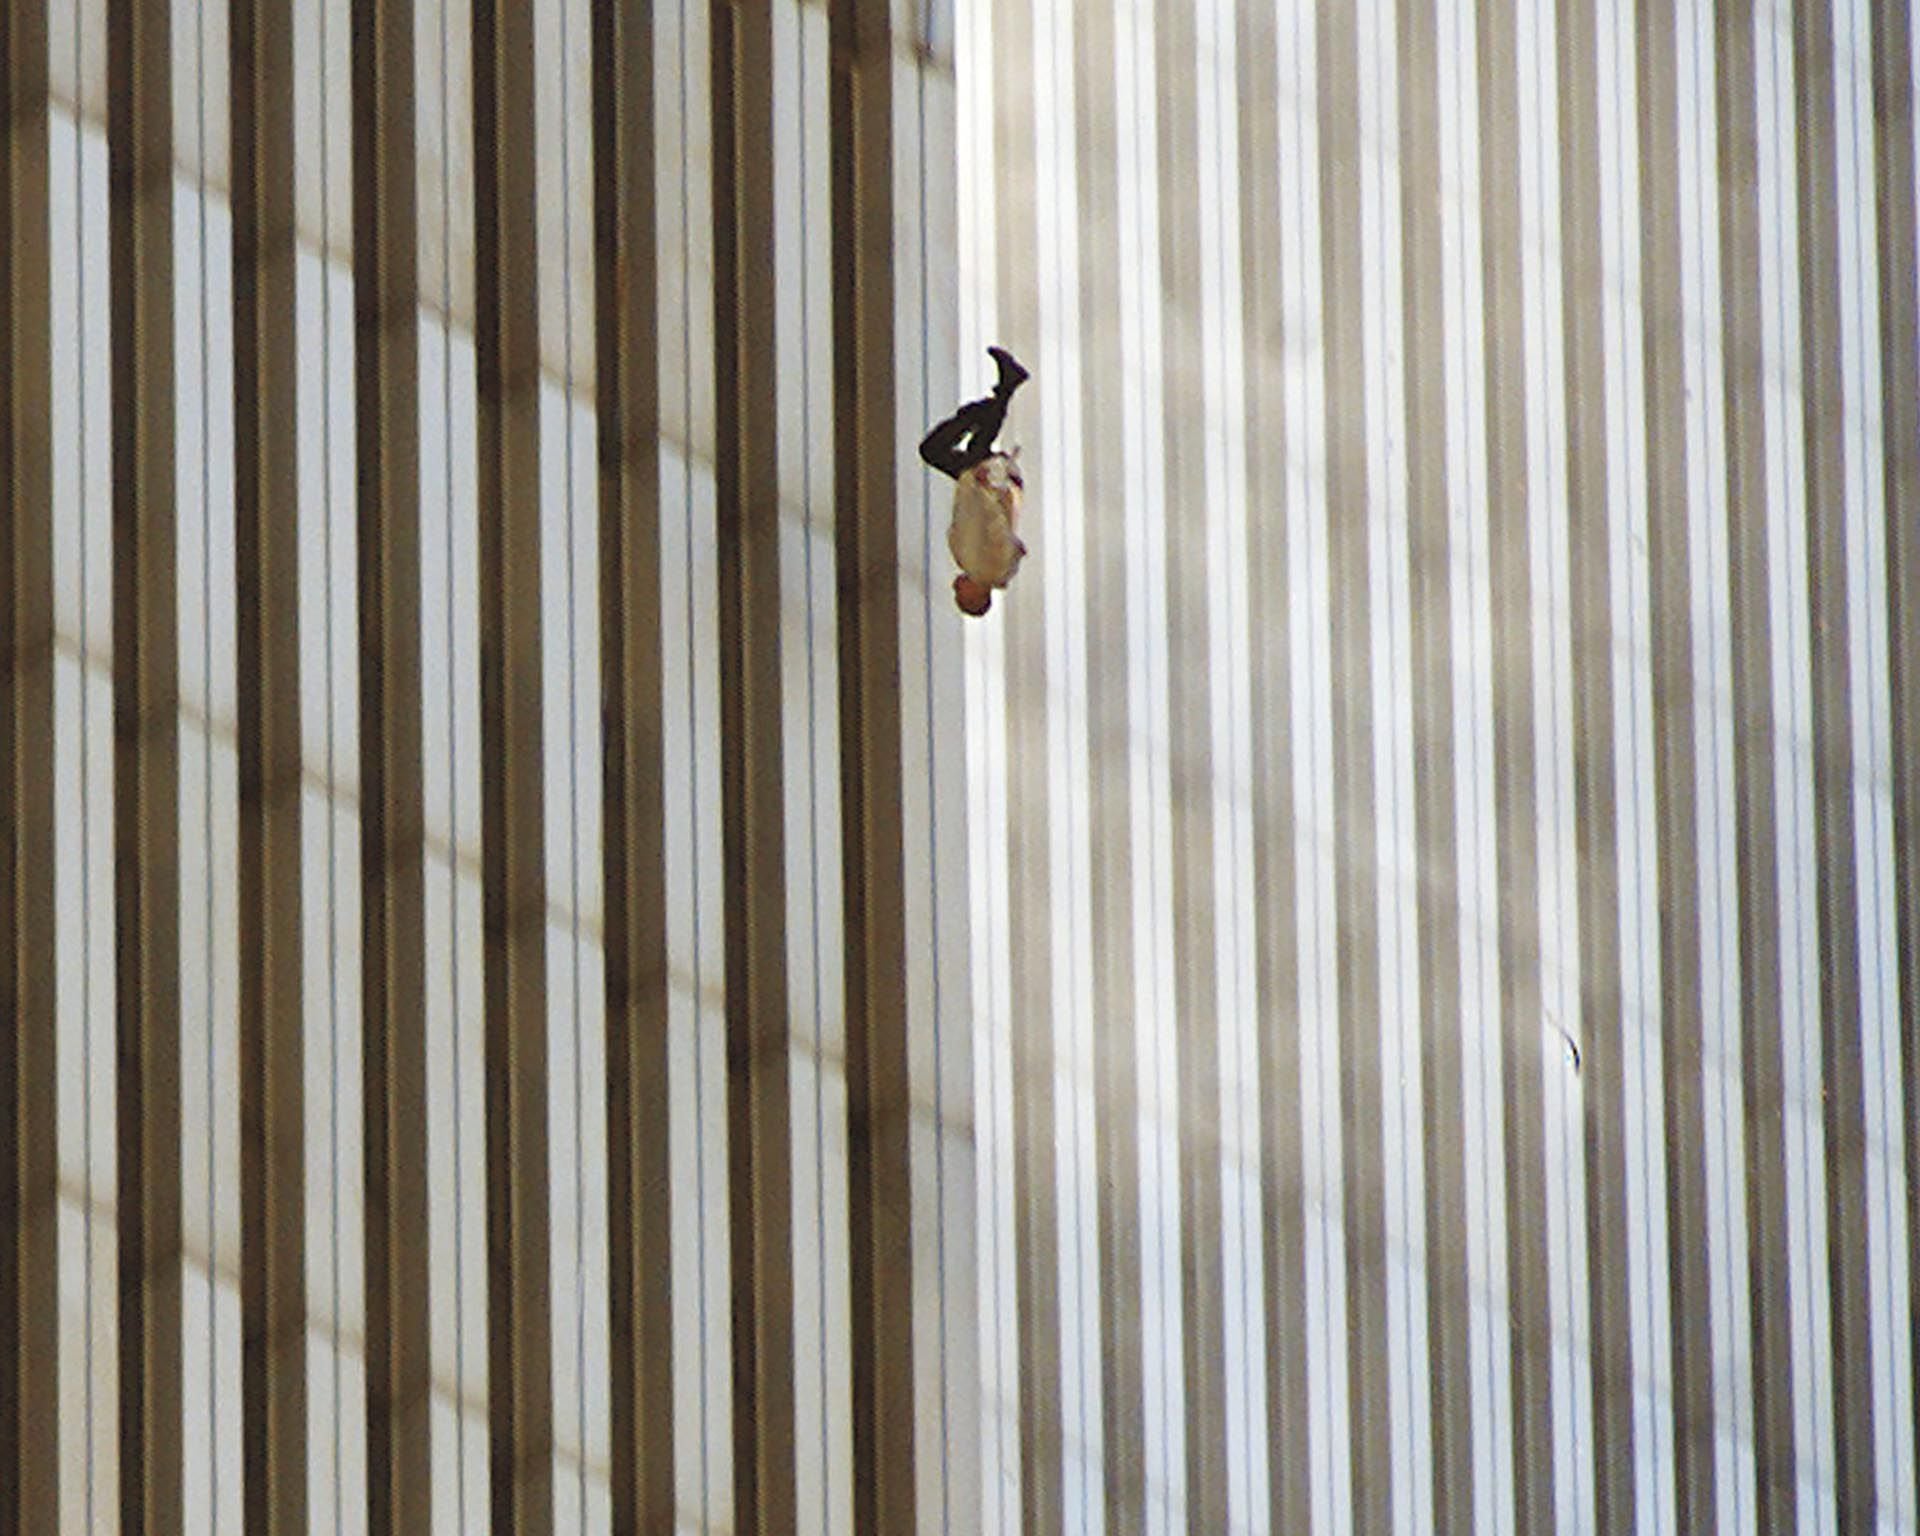 Conocida como "El hombre que cae", la fotografía fue tomada a las 9.41 de la mañana por el reportero gráfico Richard Drew, de la agencia AP y corresponde a la Torre Norte. Nunca se supo la identidad de esa persona